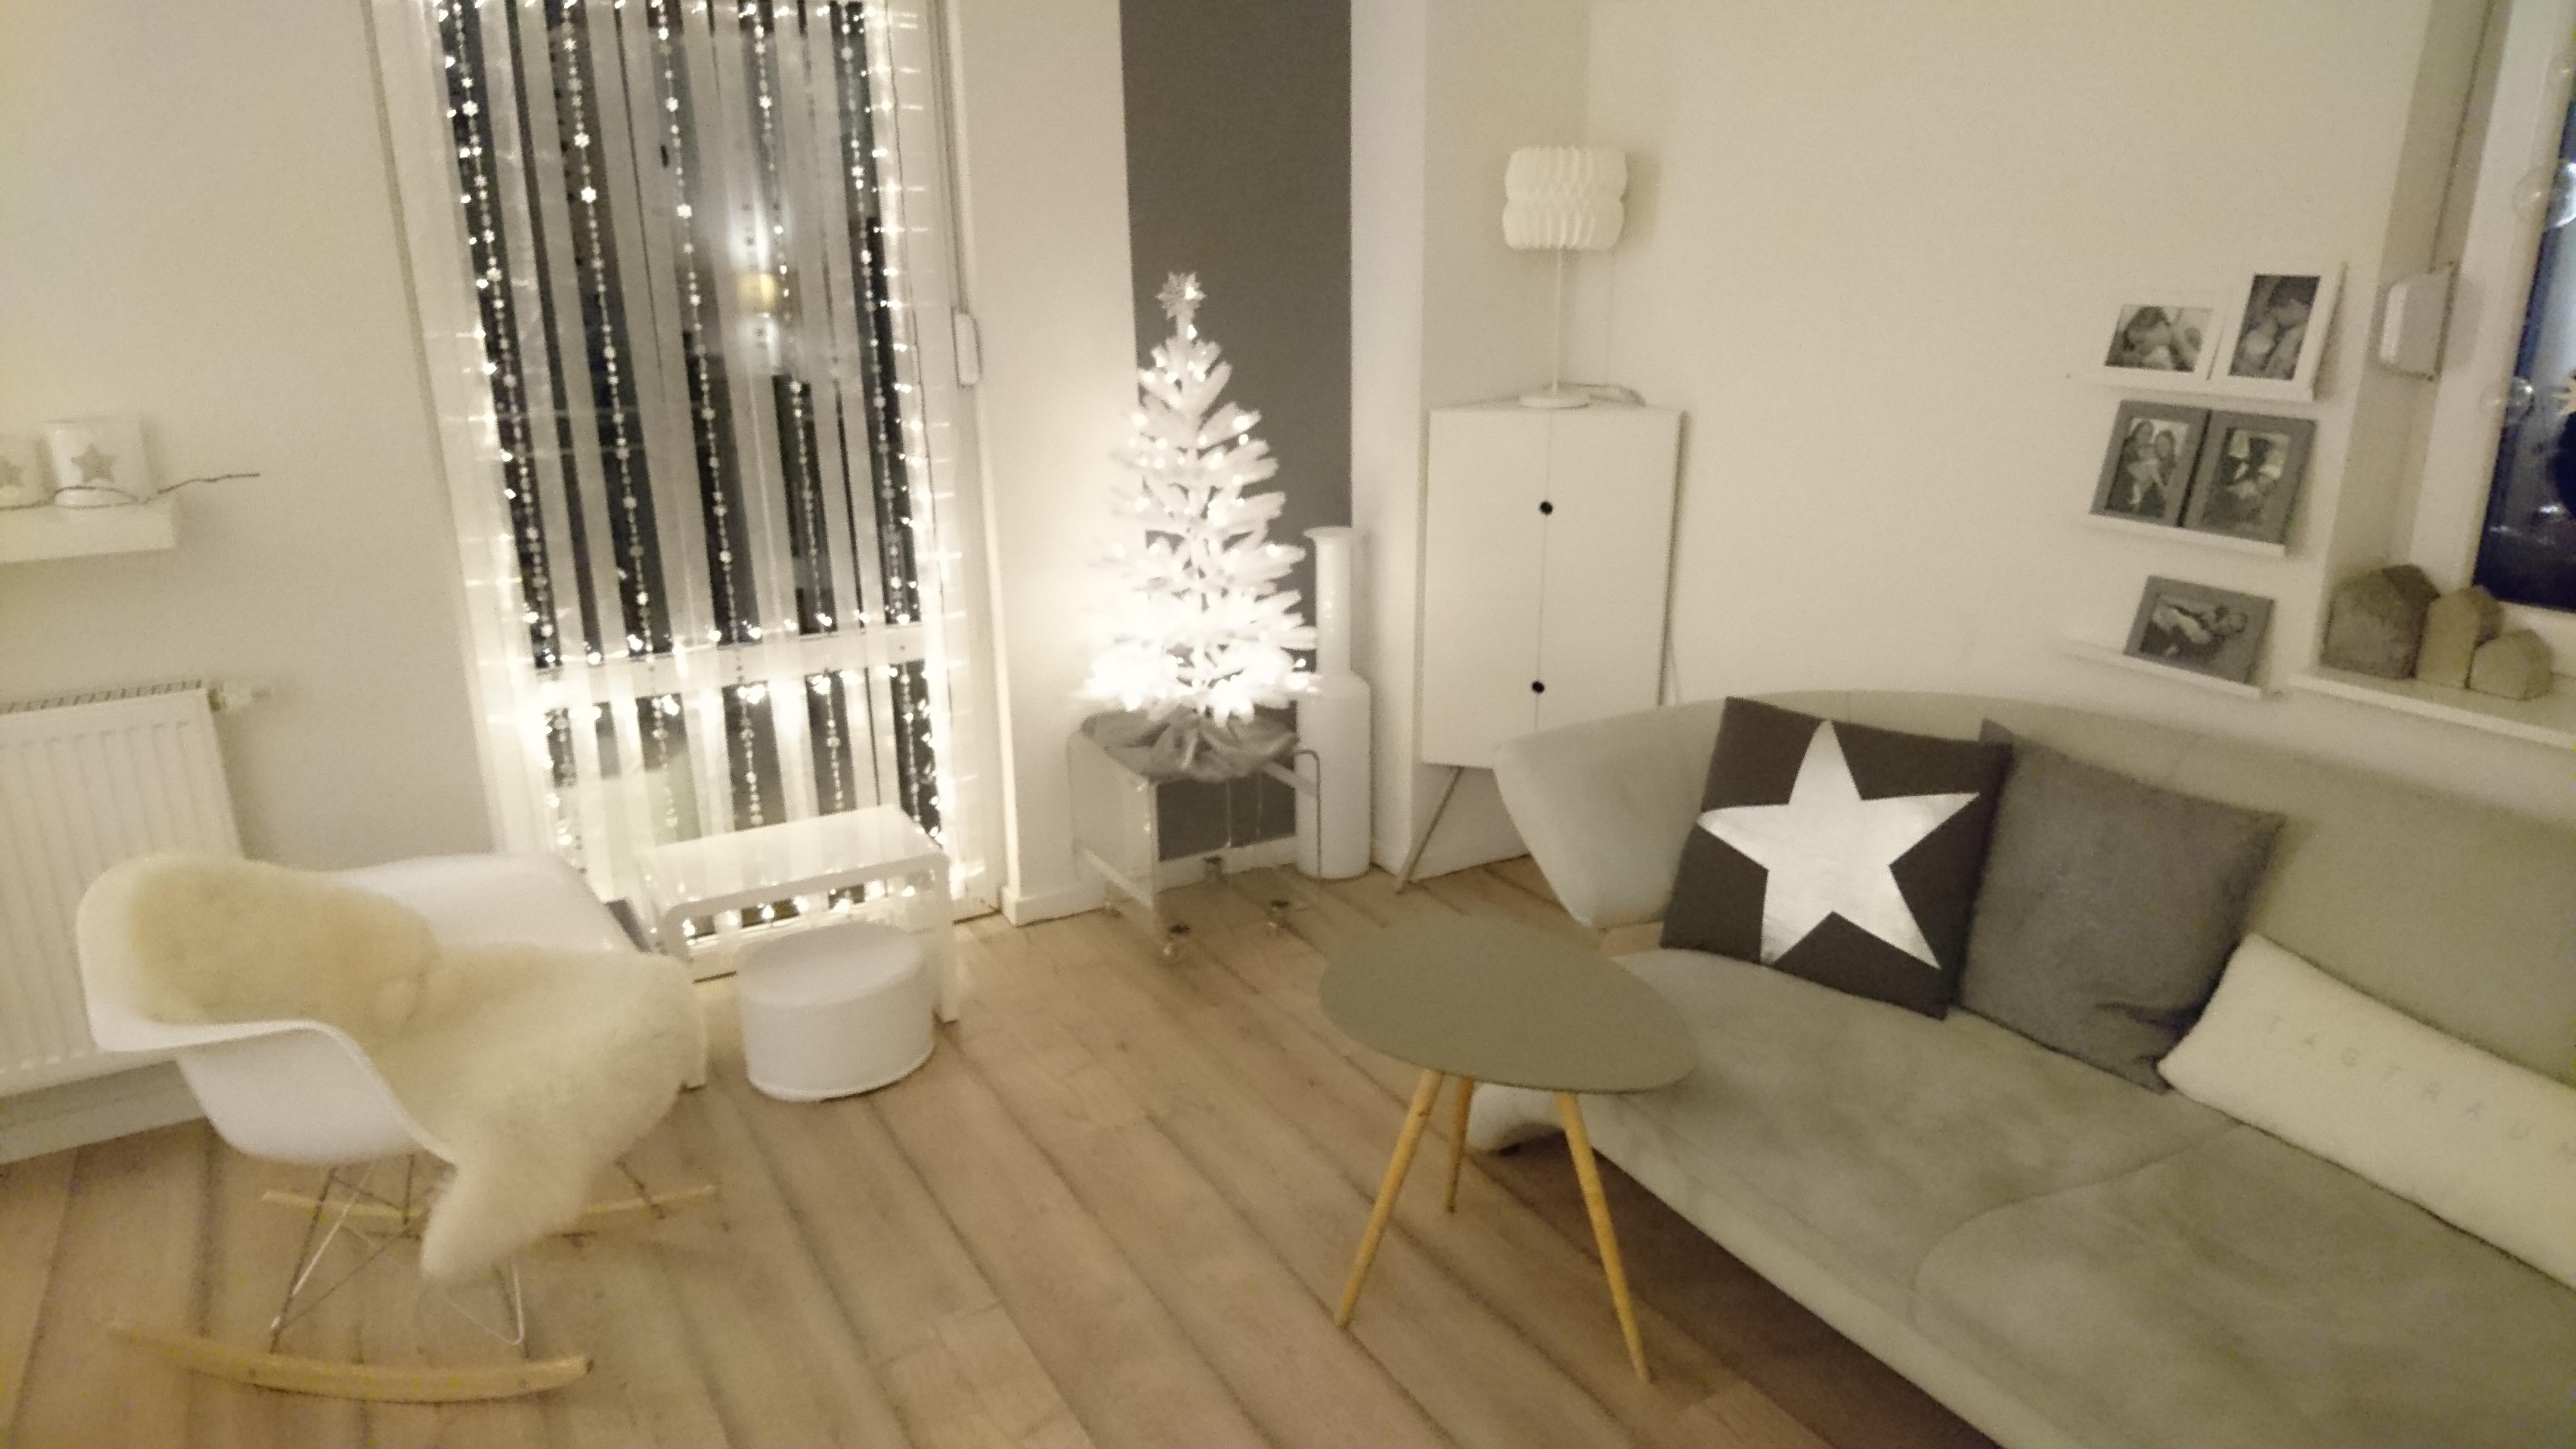 #Weihnachtsbaum #Wohnzimmer #weiße Weihnachten #graue Wand